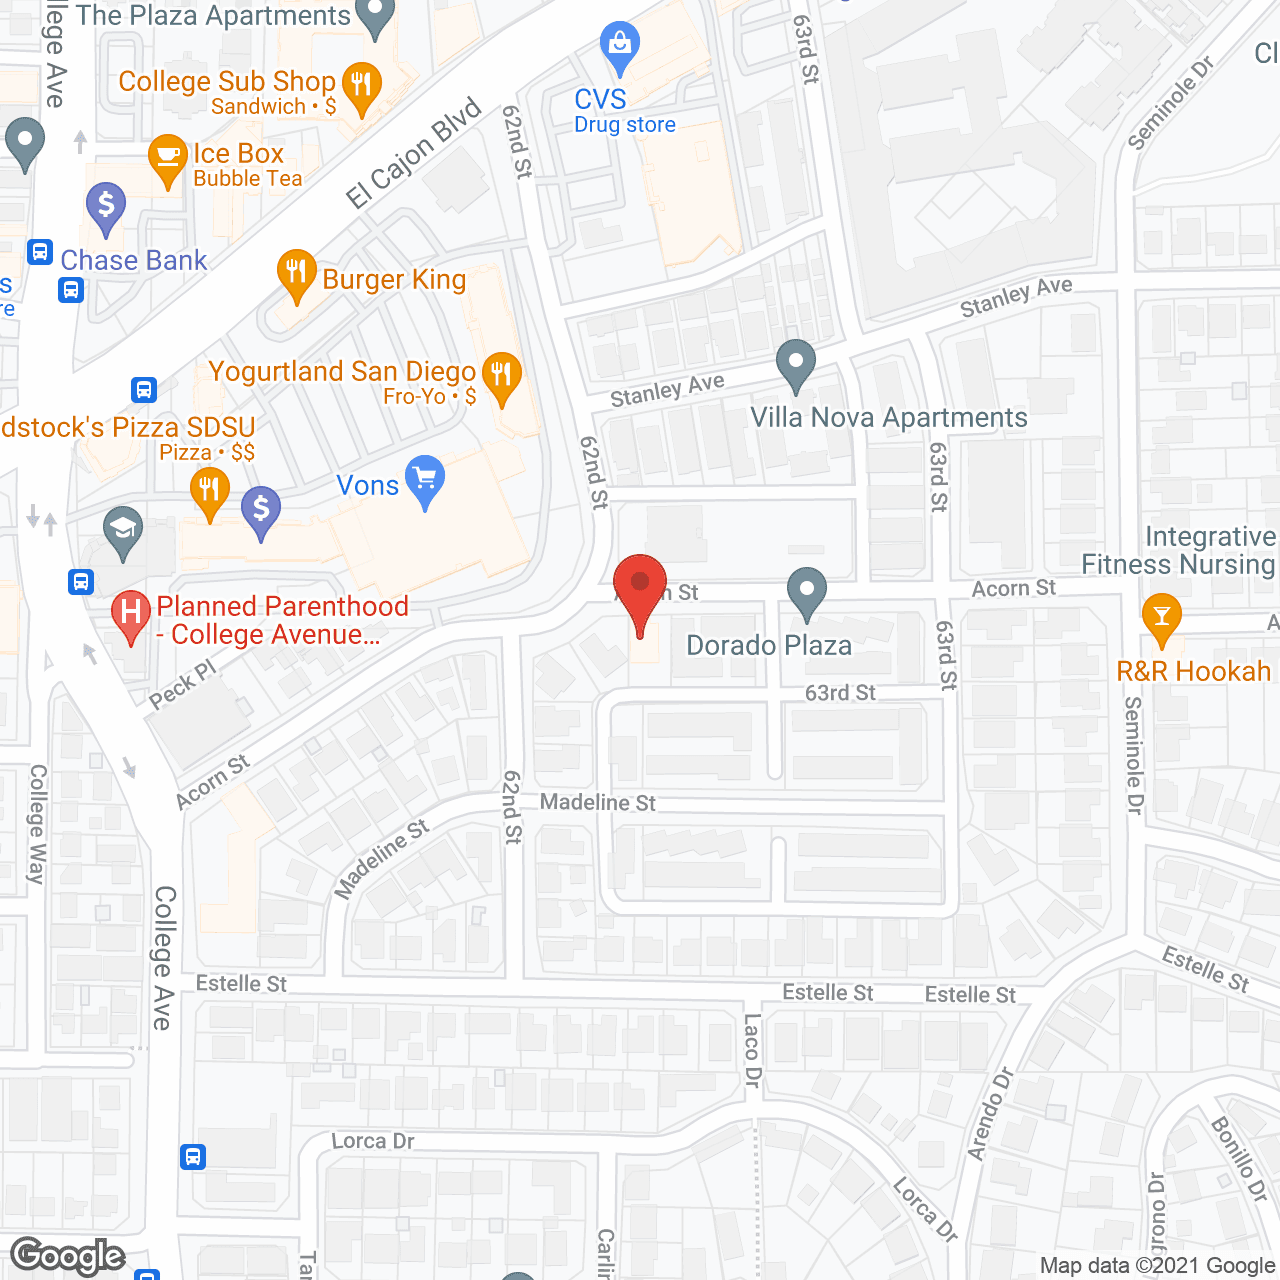 Aacorn Oaks in google map